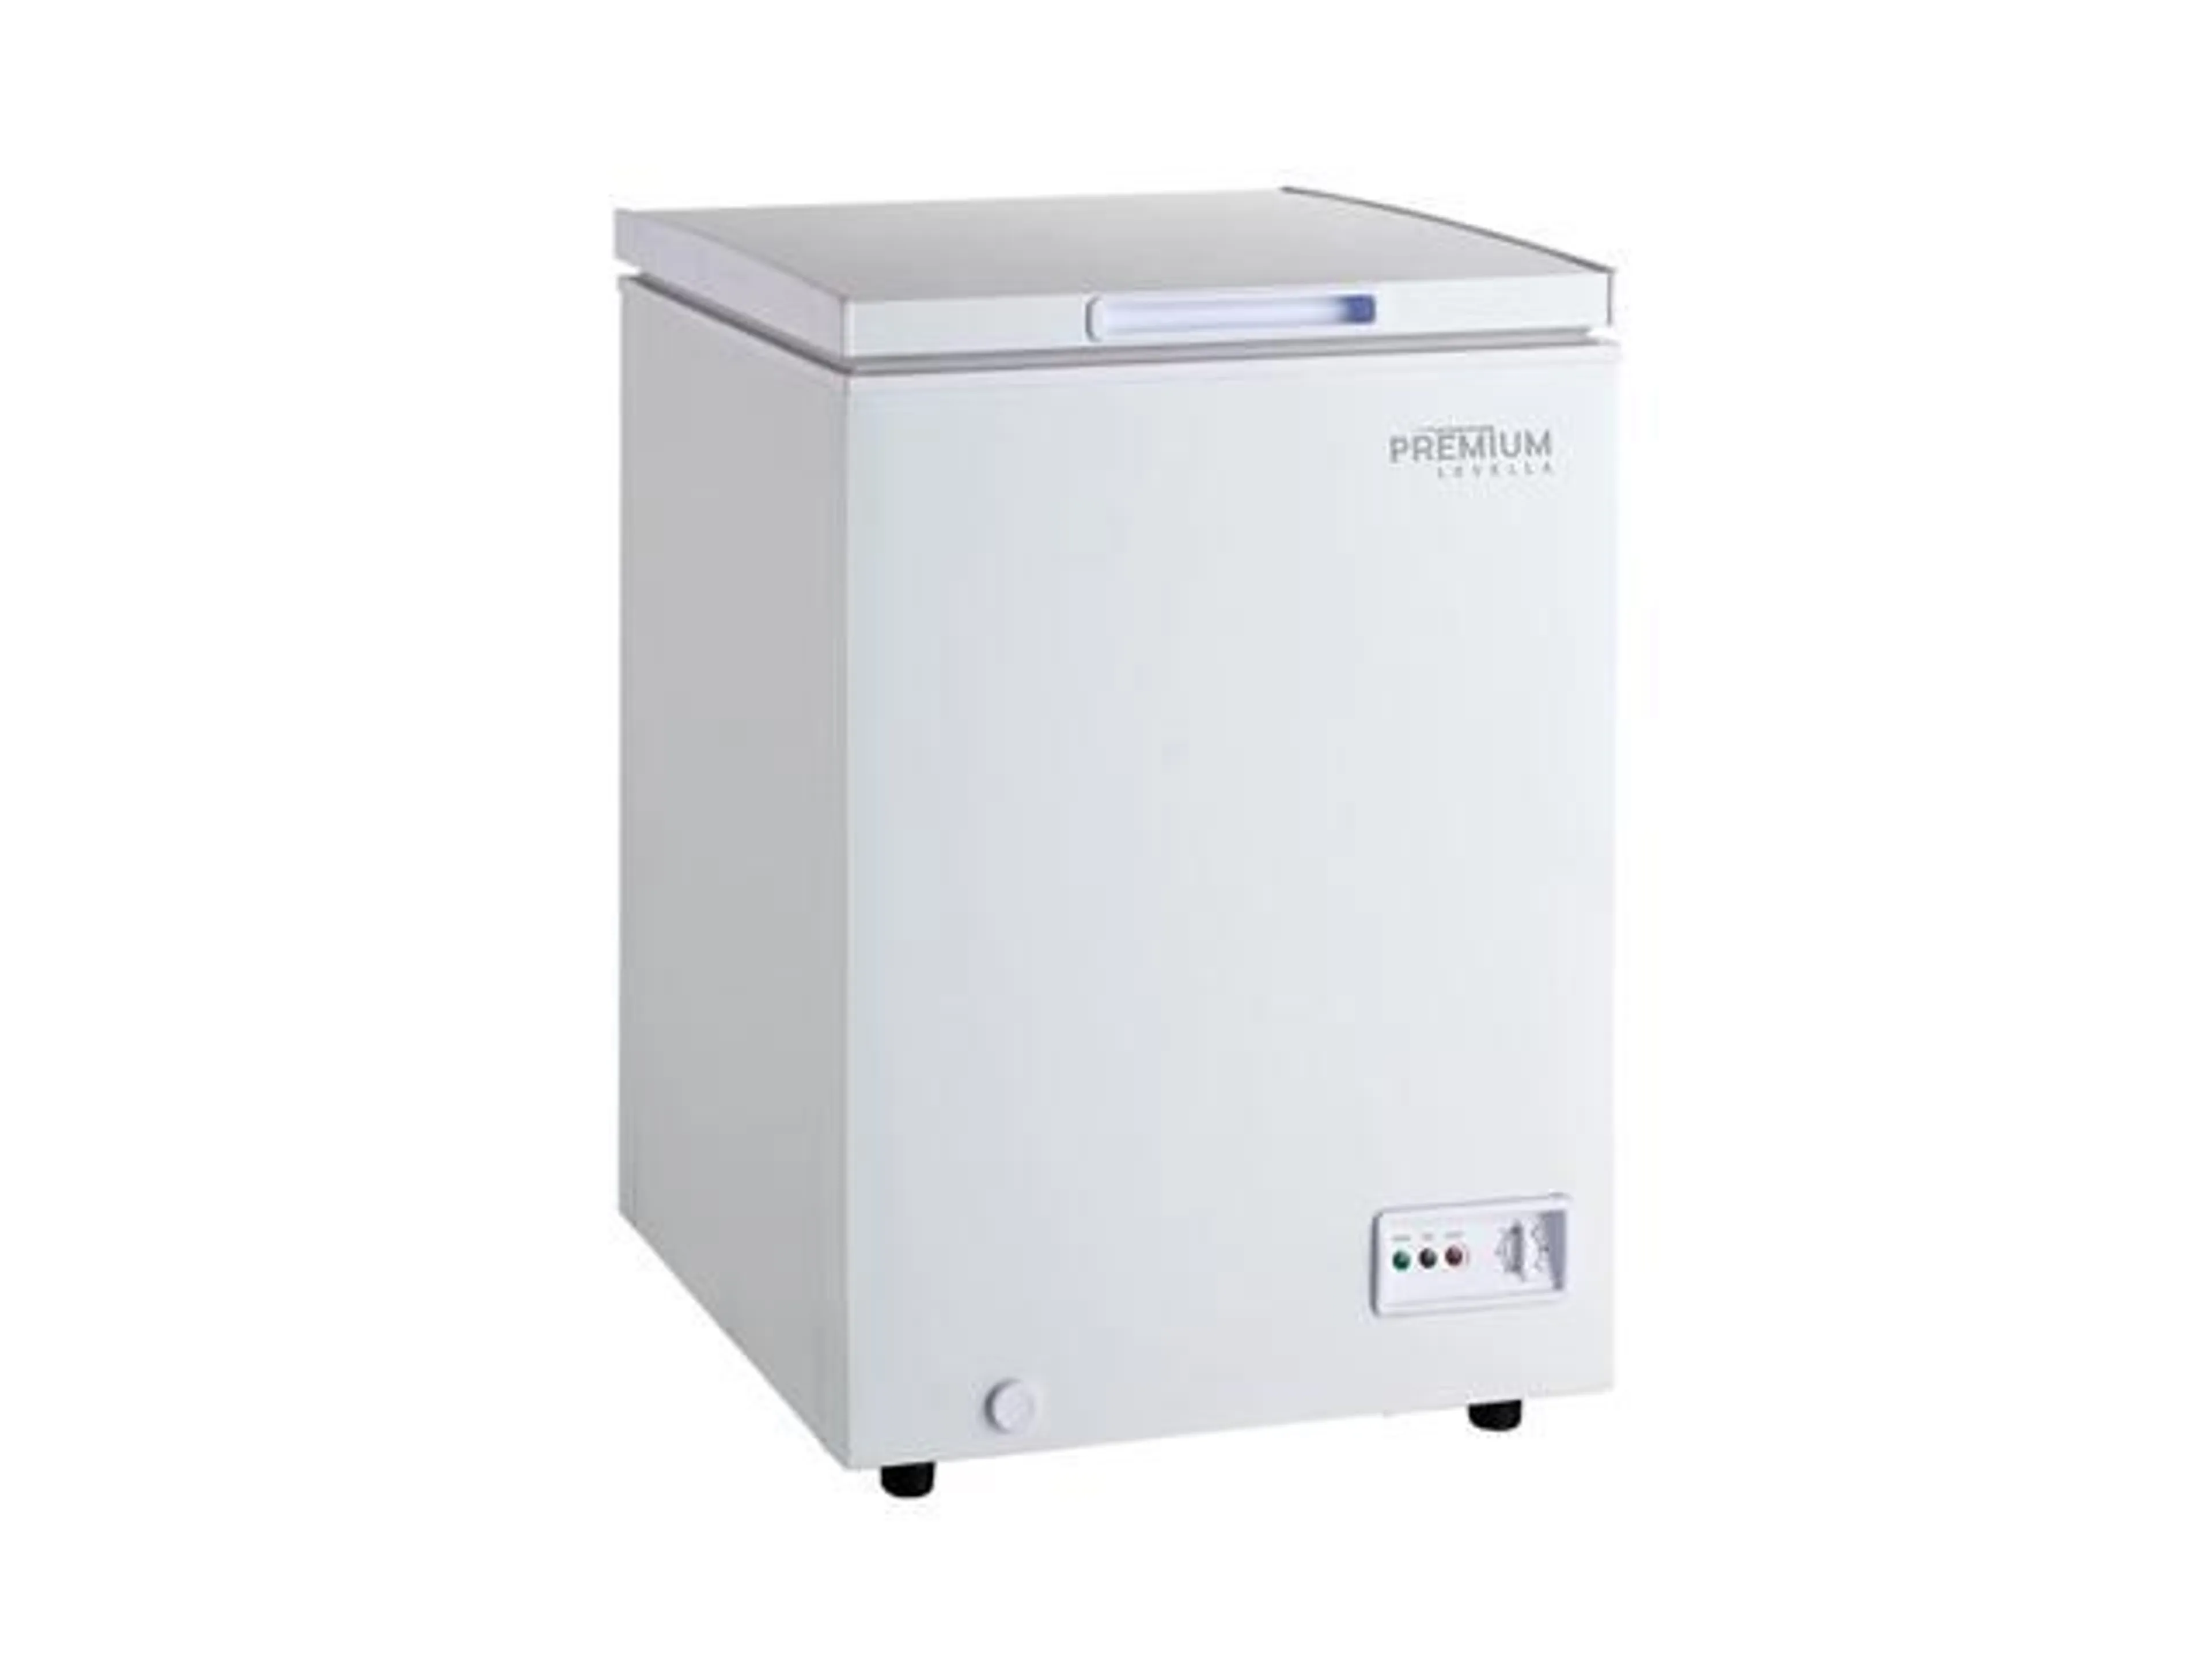 Premium Levella 3.3 Cu. Ft. Dual Function Chest Freezer/Refrigerator White